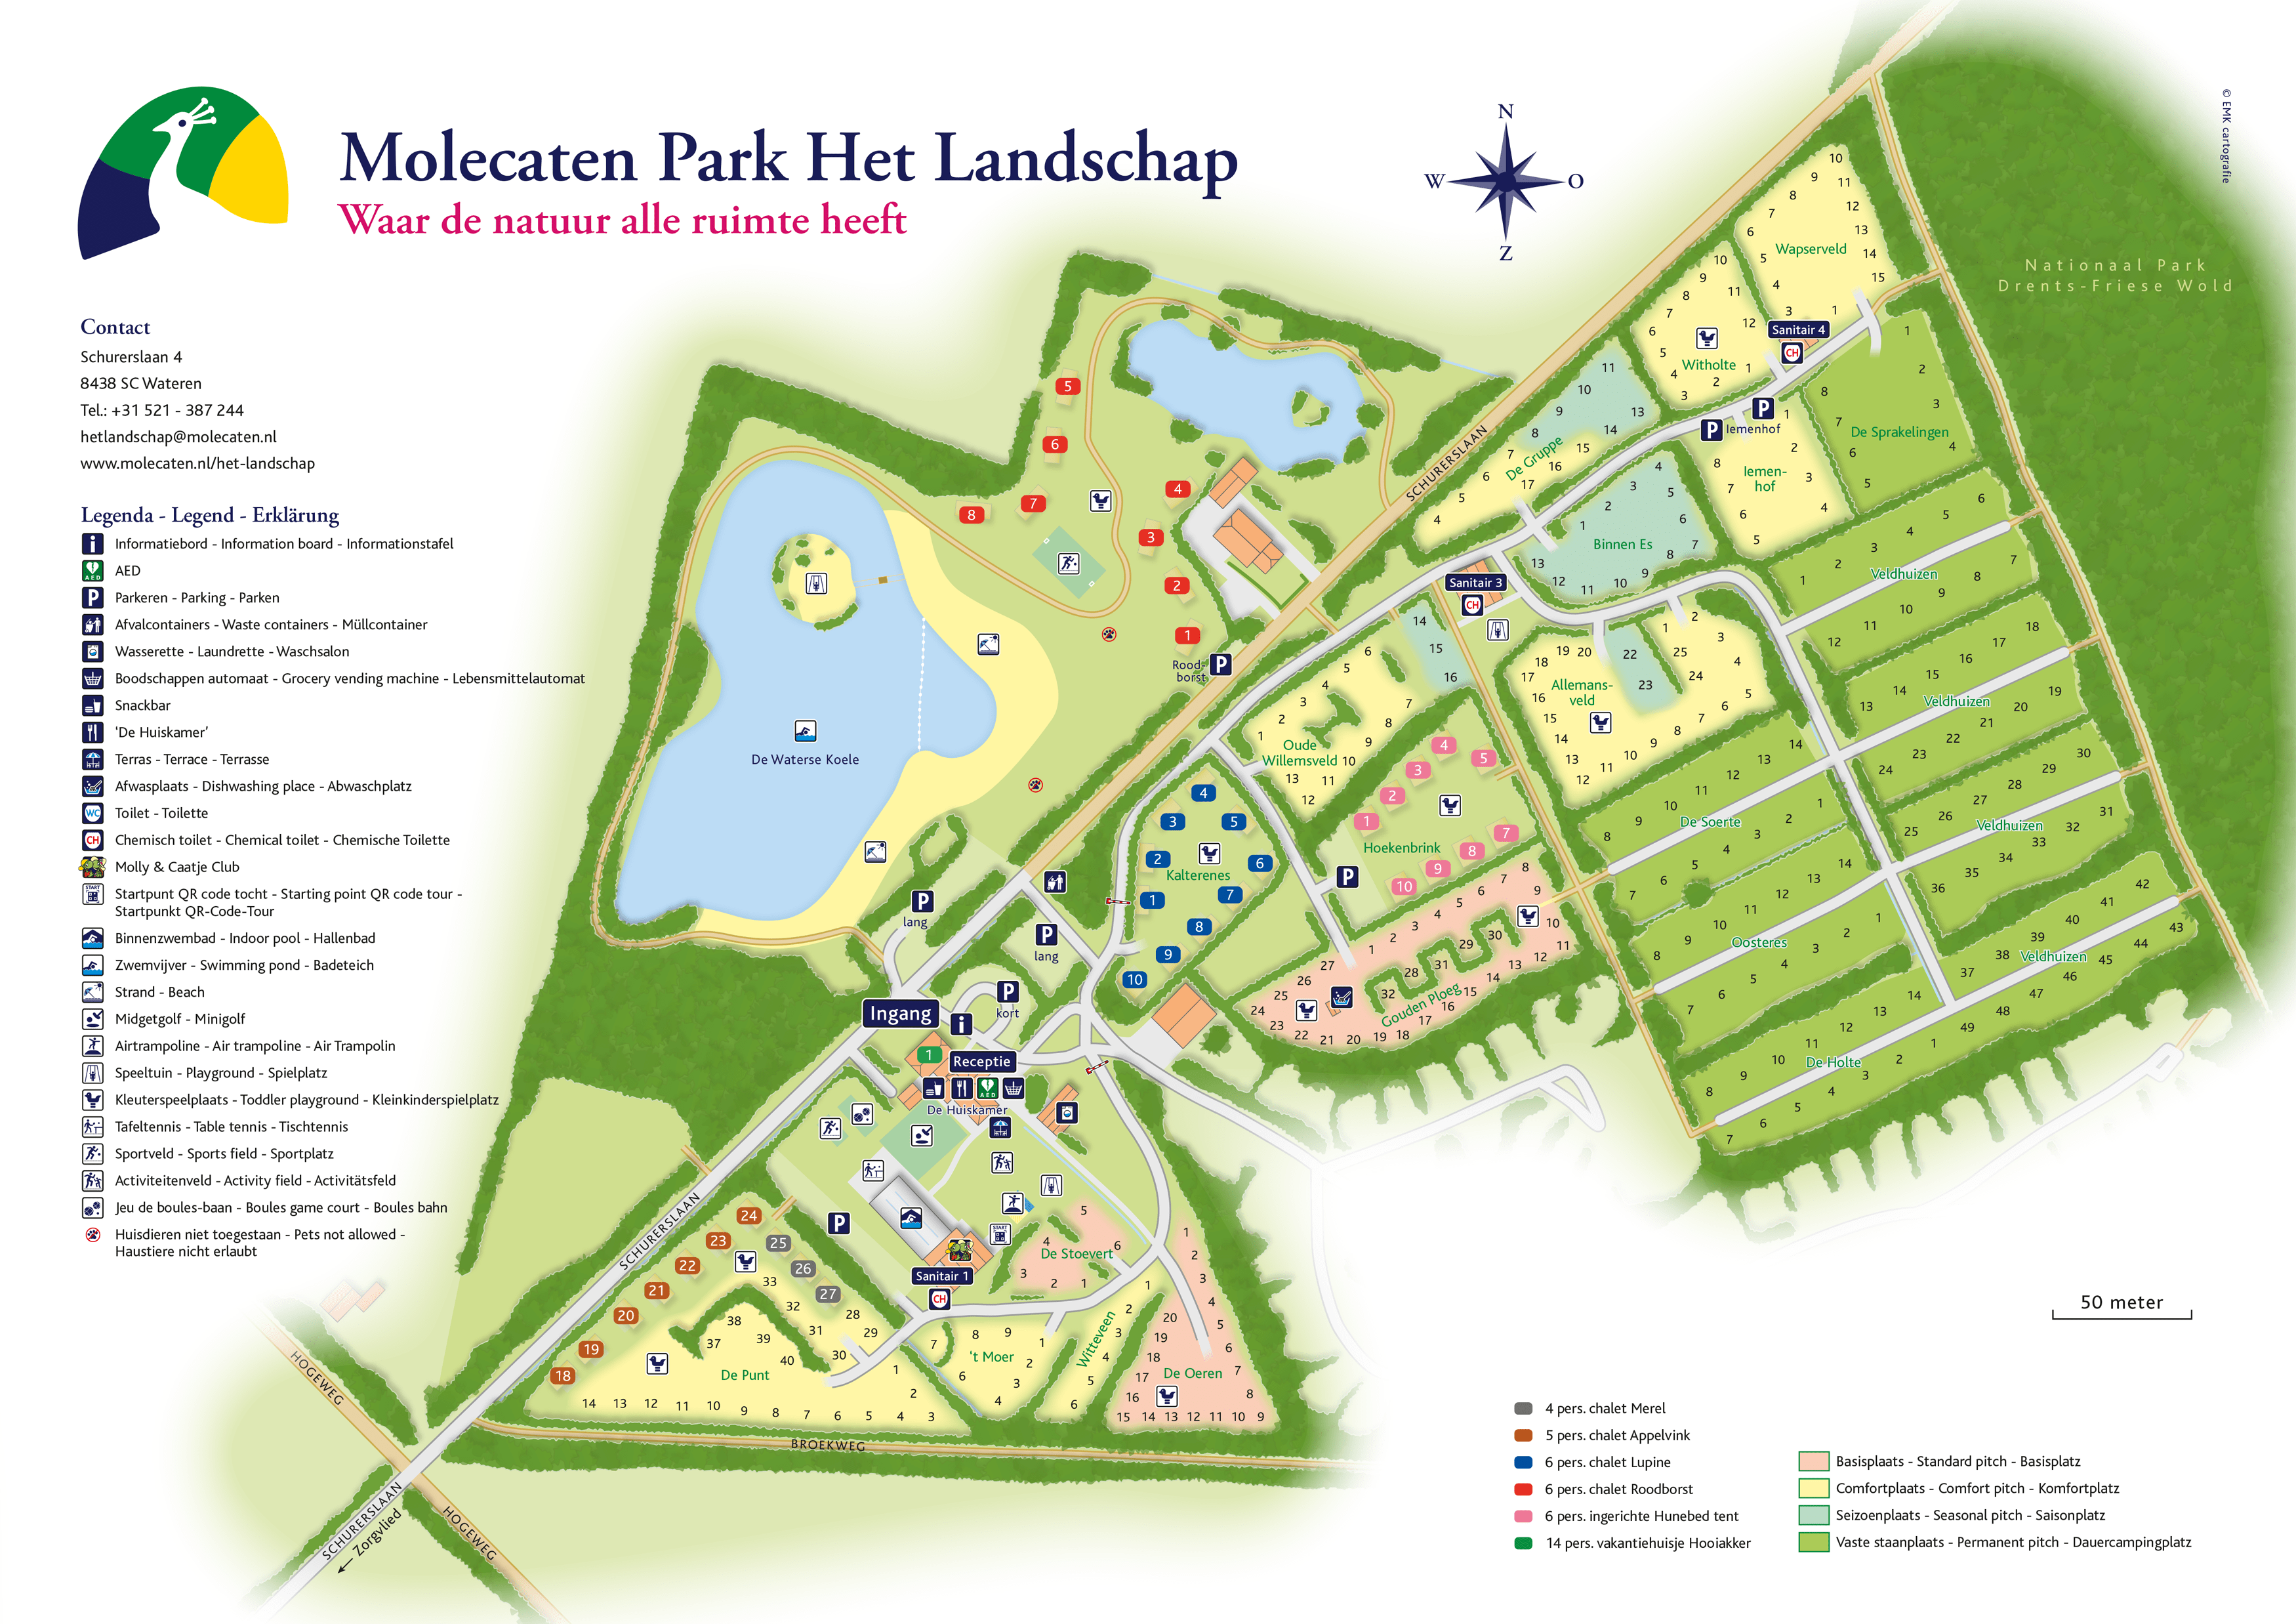 Molecaten Park Het Landschap accommodation.parkmap.alttext